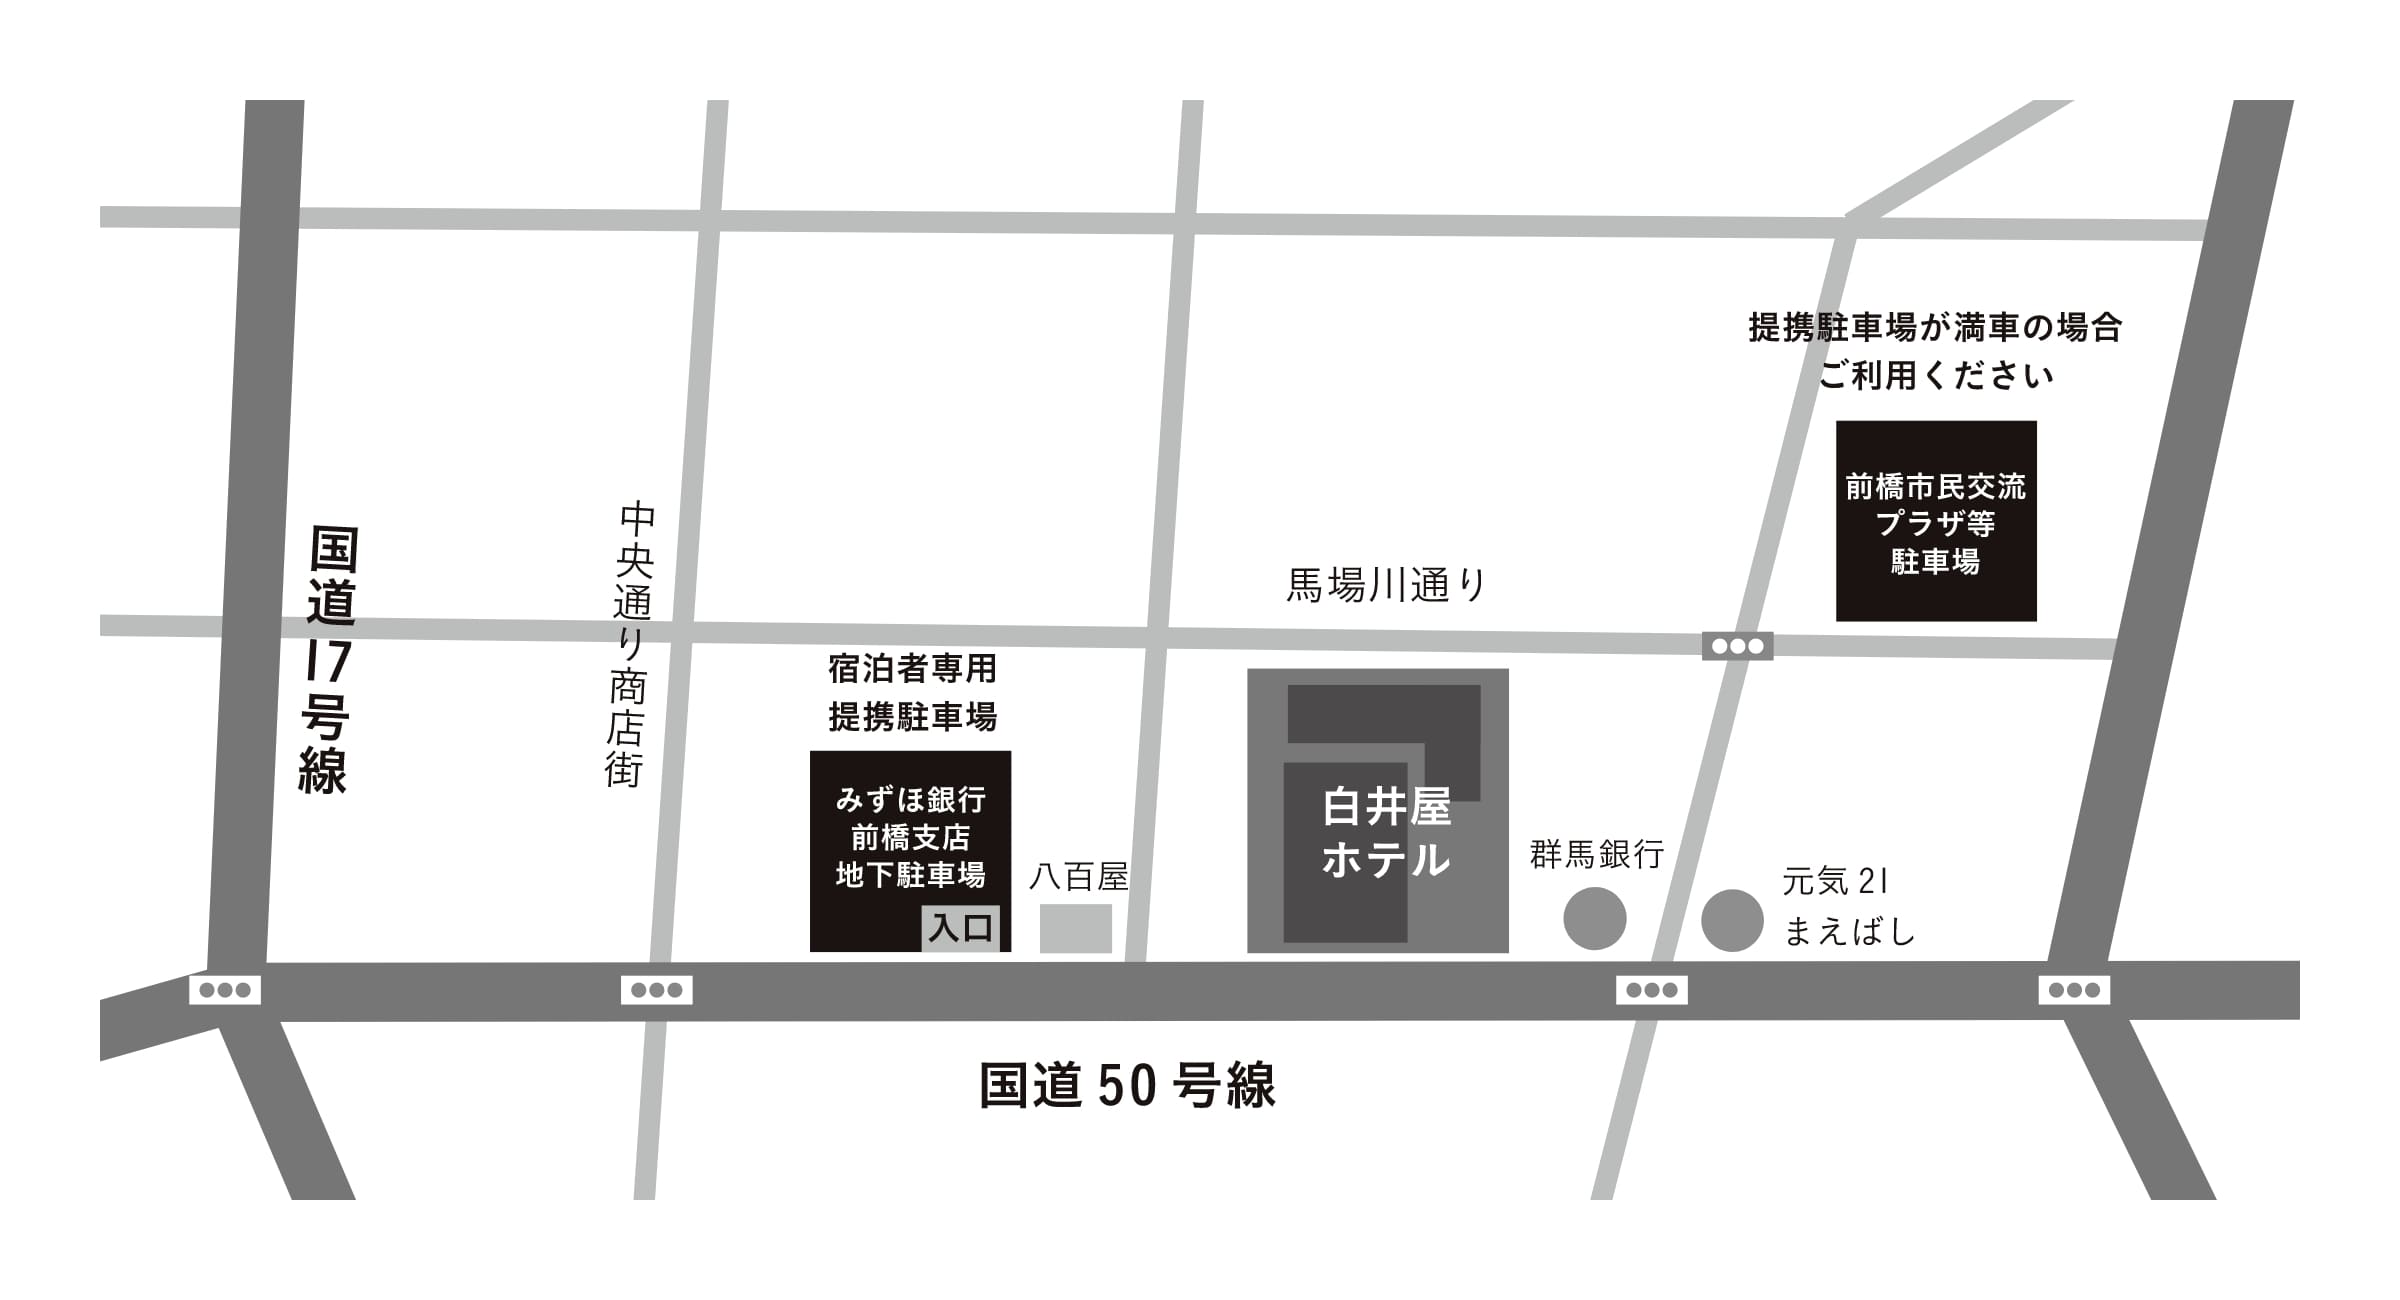 みずほ銀行前橋支店 地下駐車場と前橋市民交流プラザ等駐車場（アーツ前橋駐車場）の地図